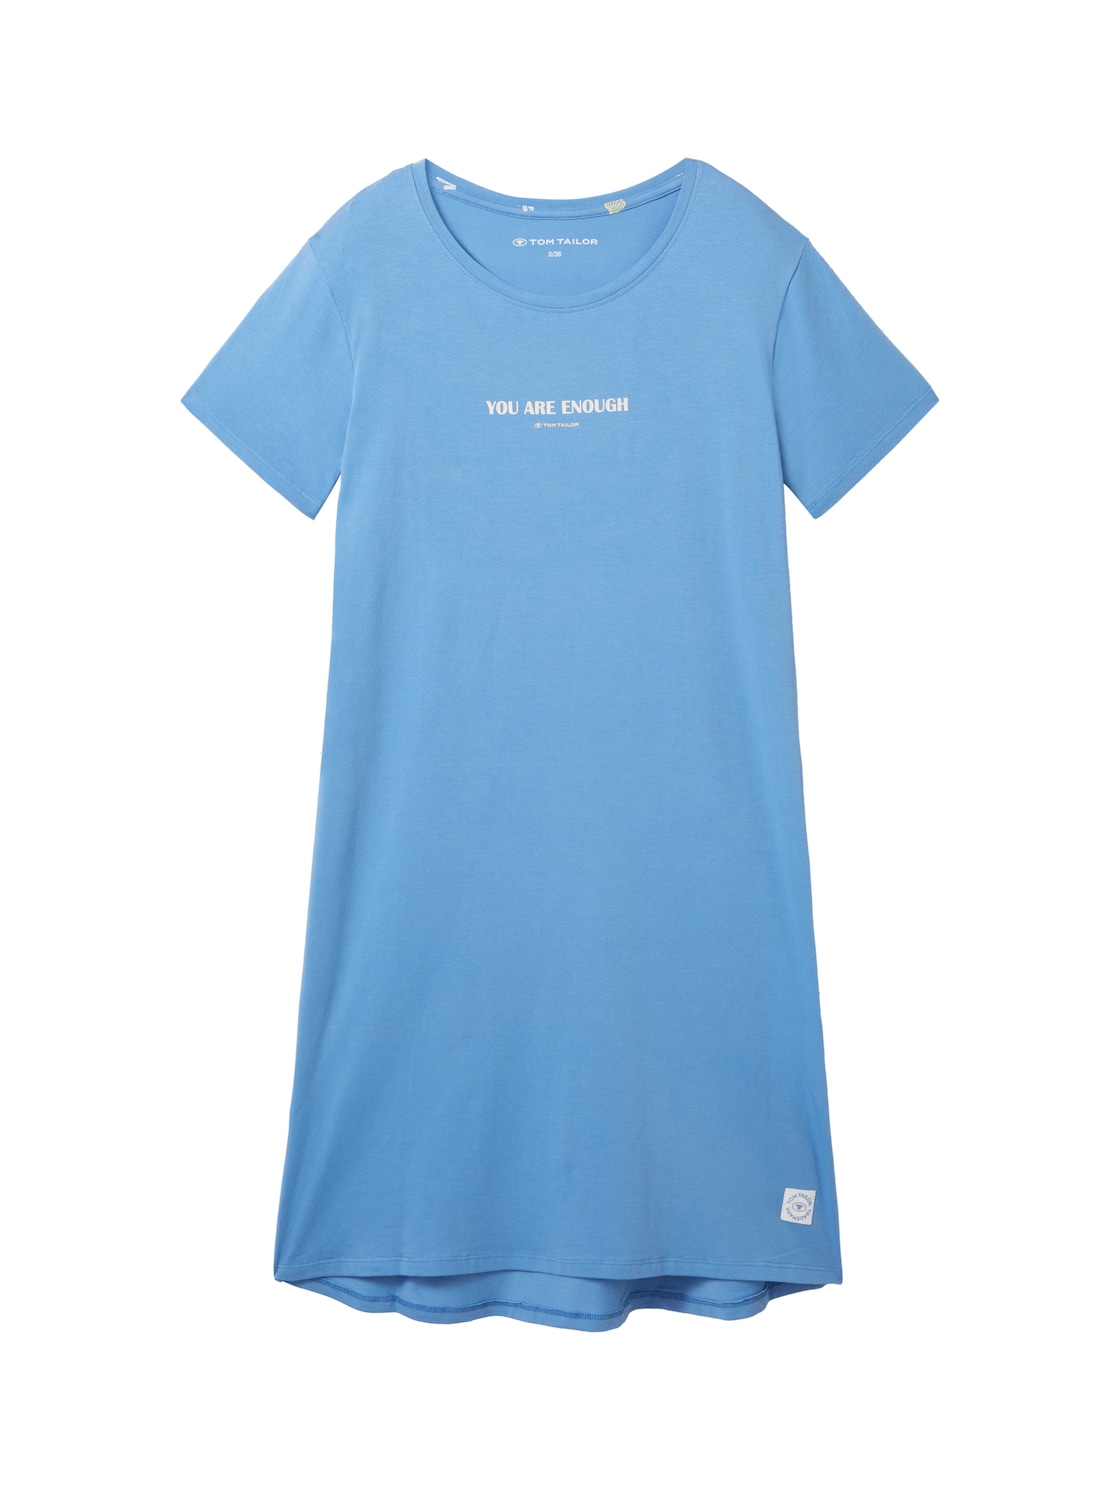 TOM TAILOR Damen Nachthemd mit Textprint, blau, Uni, Gr. XL/42 von Tom Tailor